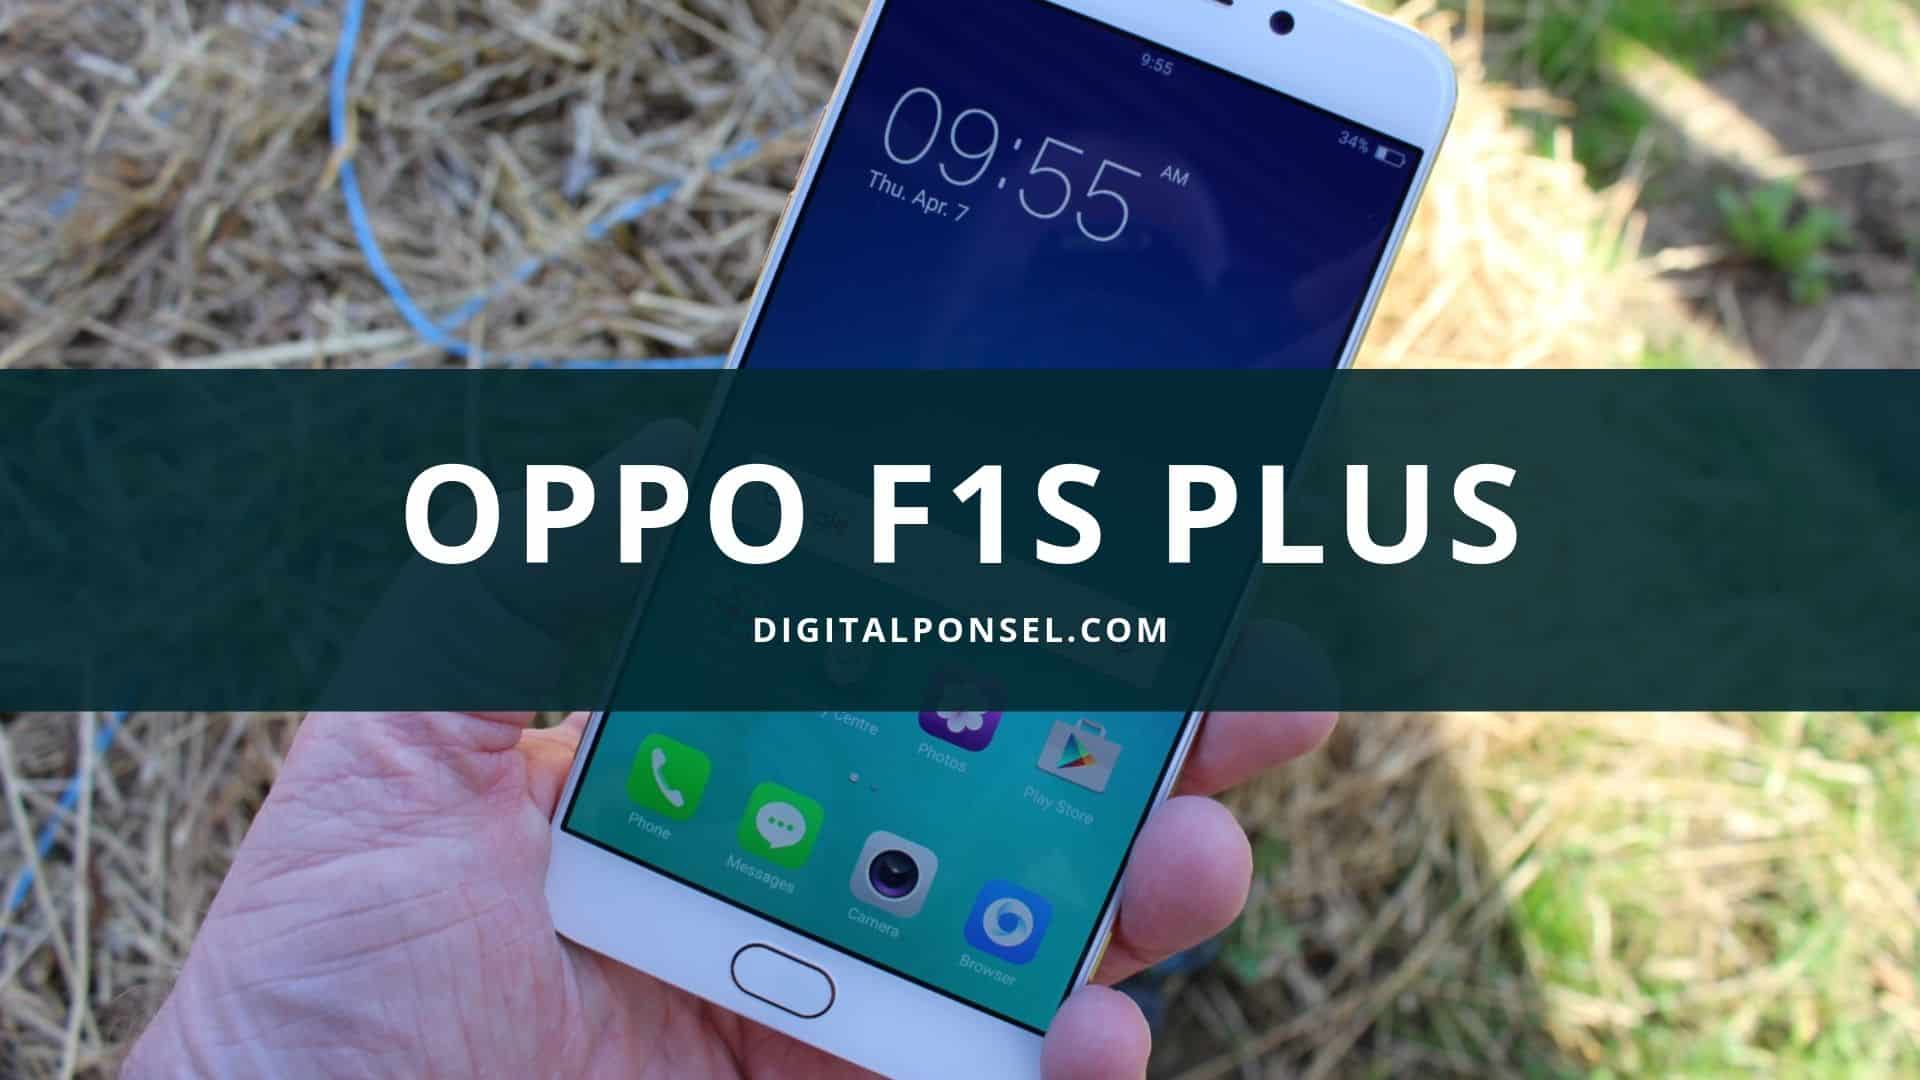 Oppo F1S Plus